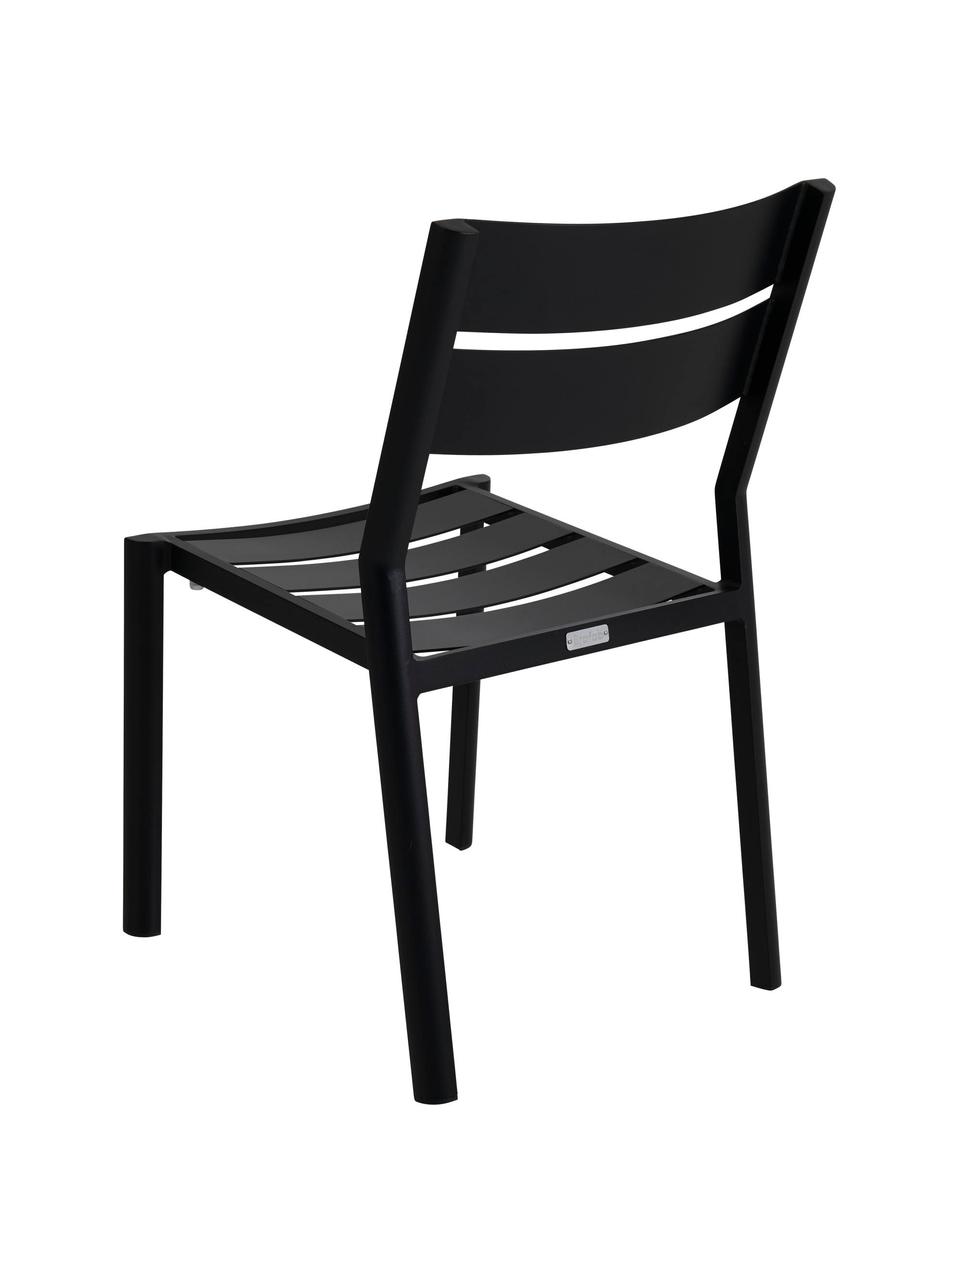 Chaise de jardin empilable noir Delia, Aluminium, revêtement par poudre, Noir, larg. 48 x prof. 55 cm